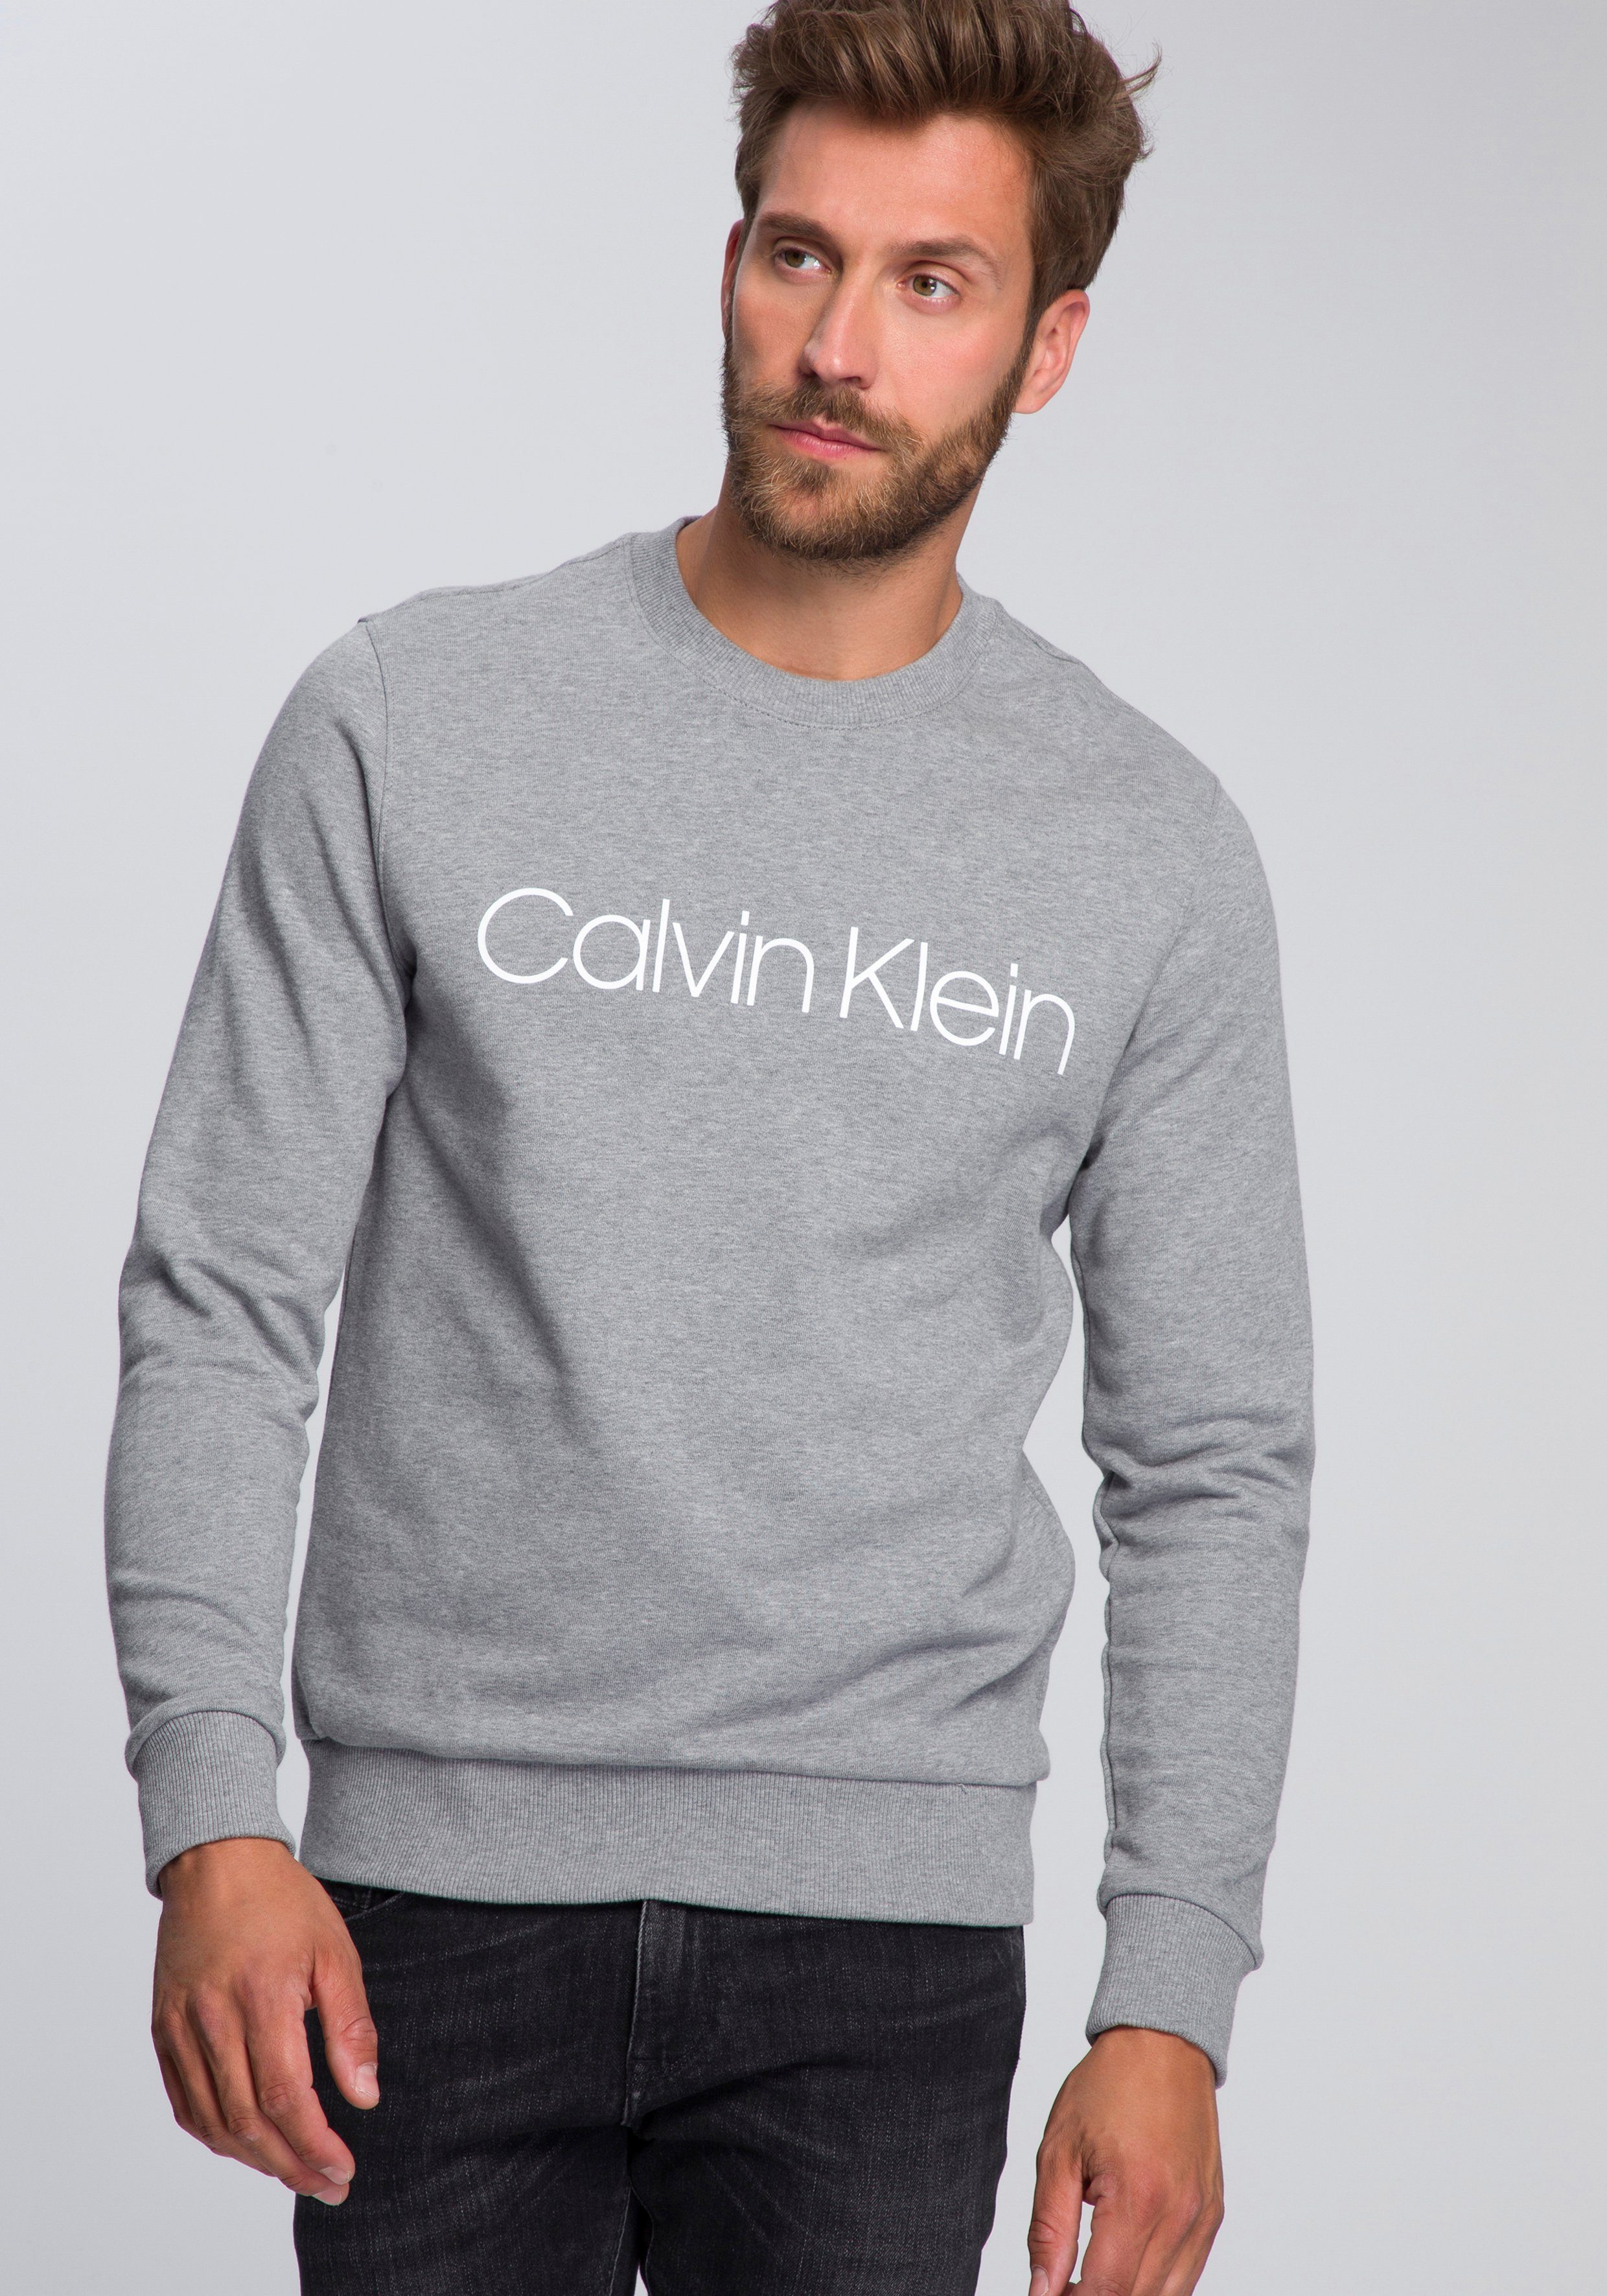 Günstiger Calvin Klein Pullover Herren online kaufen | OTTO